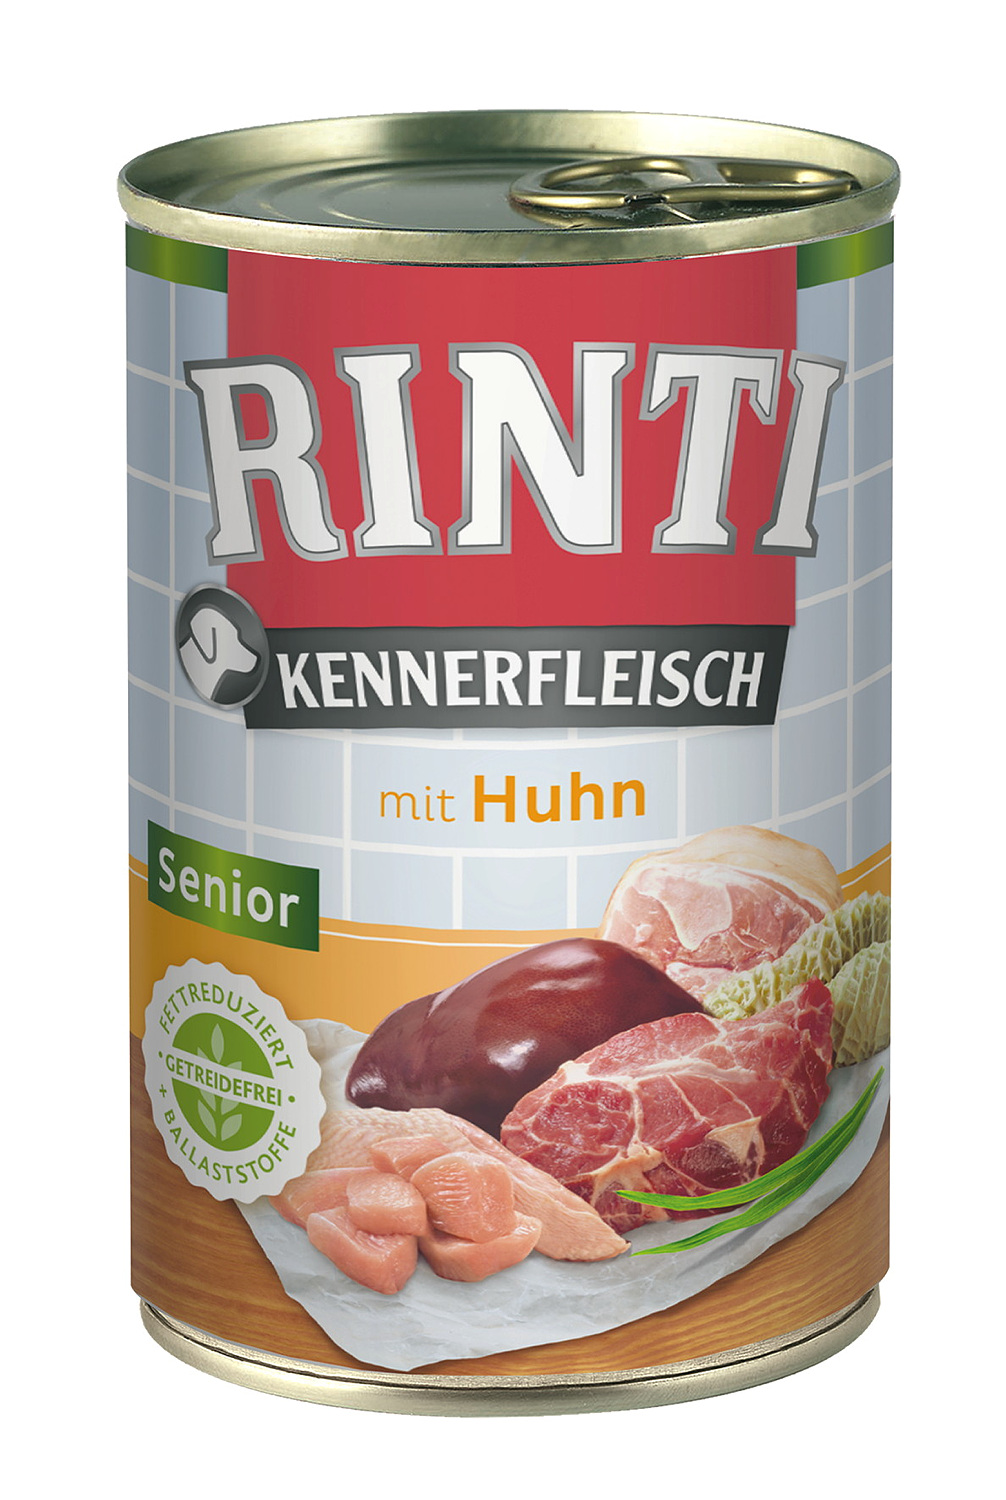 Rinti Kennerfleisch Senior mit Huhn 400 g